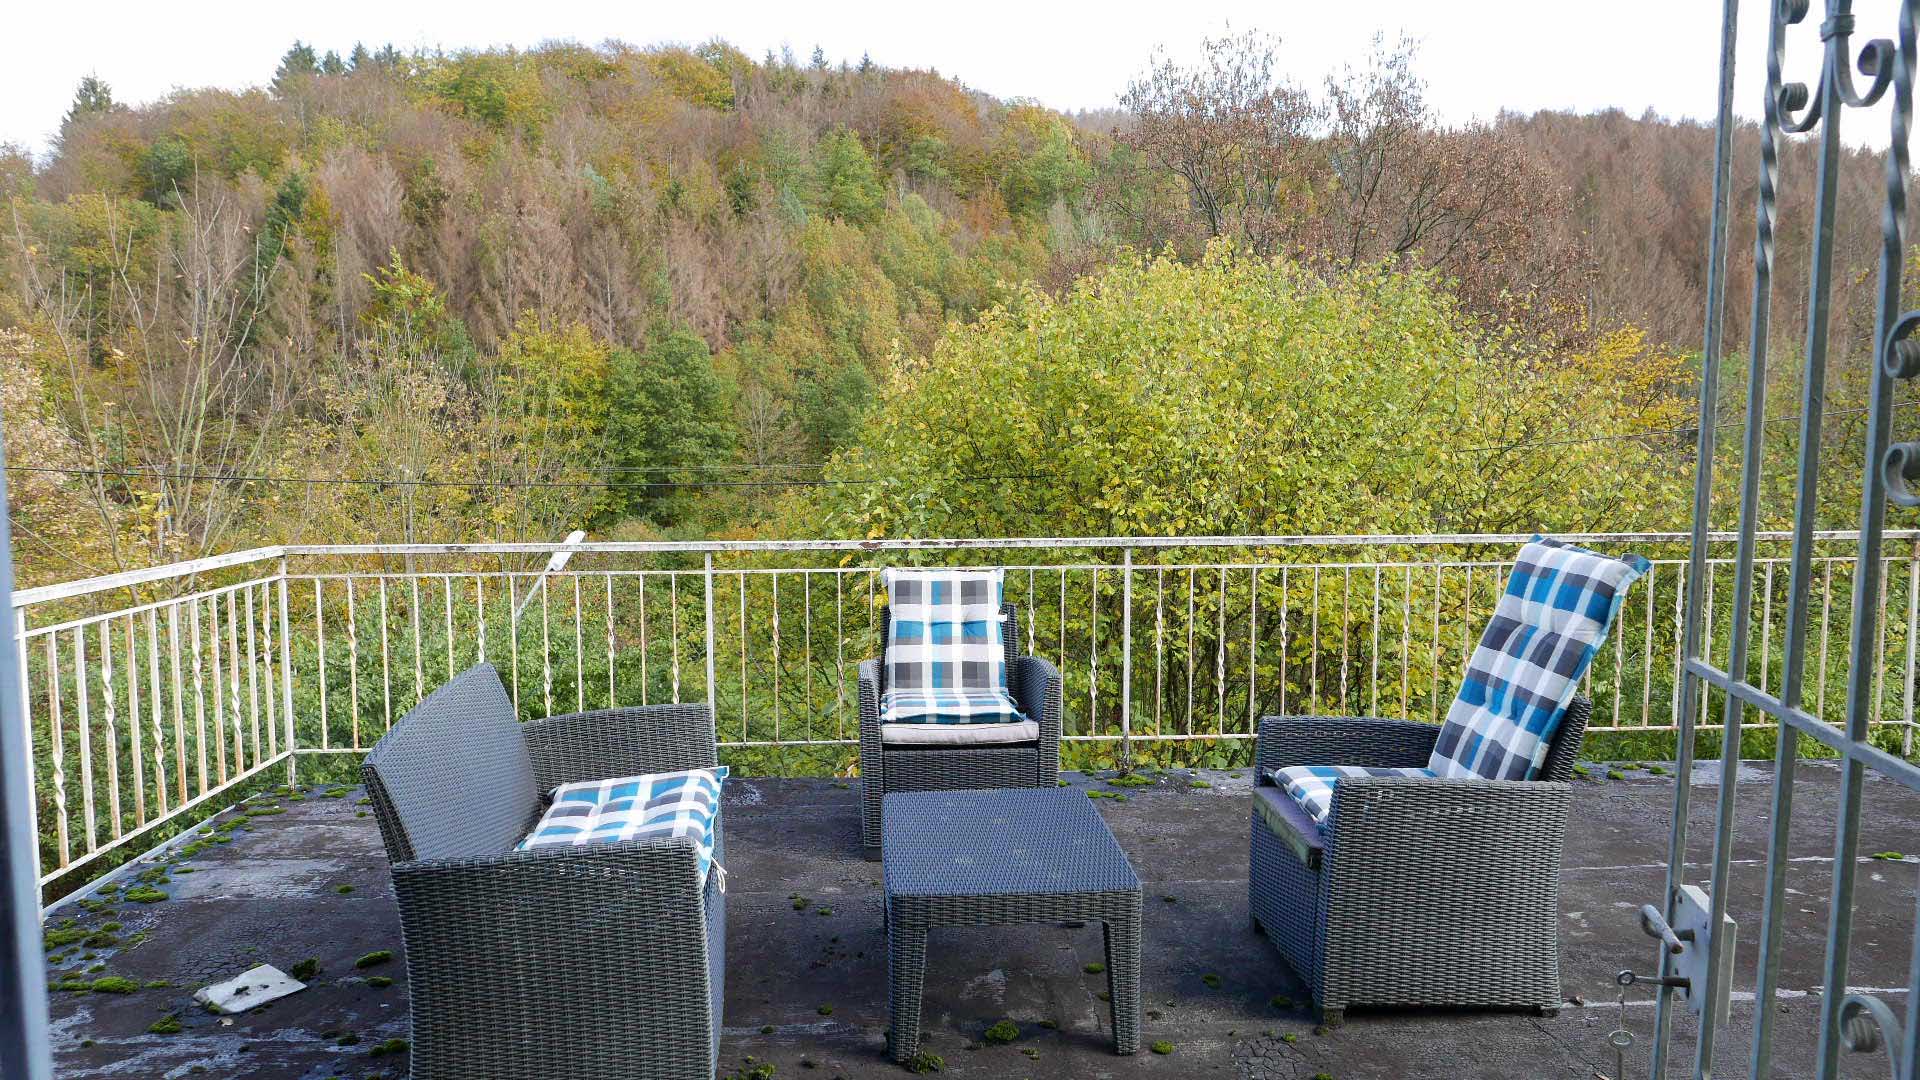 Morsbach-Ellingen: Seltenes Angebot für Naturliebhaber, ...dieser herrlichen, 4,5 x 6,5 m großen Terrasse